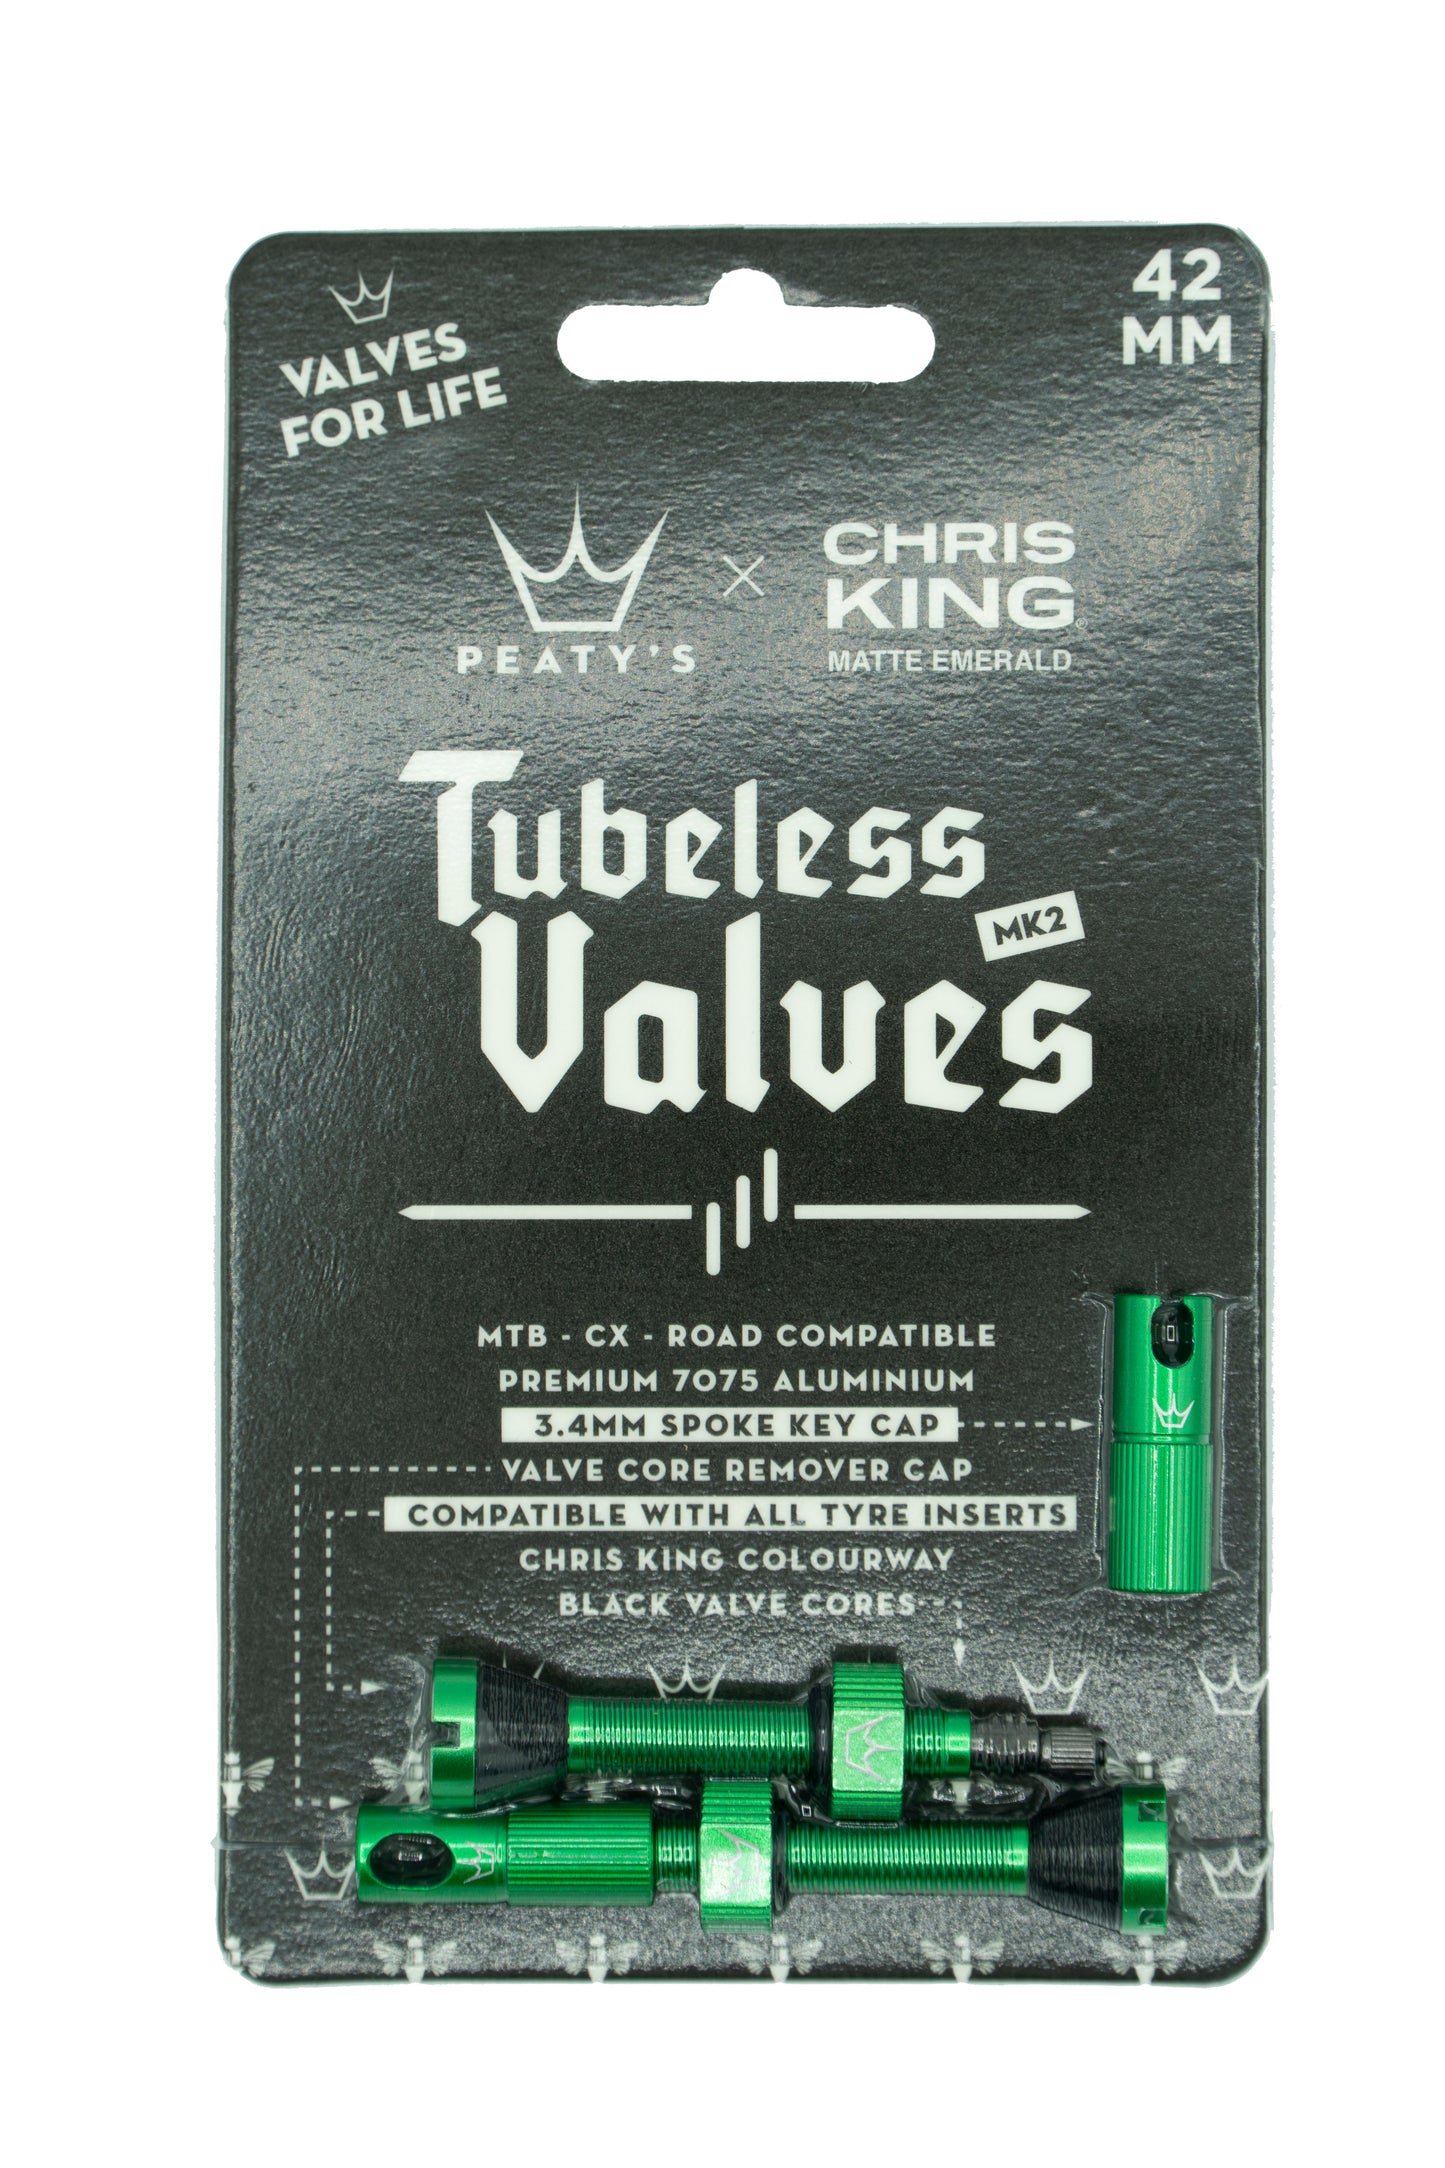 Peaty's Chris King Tubeless valves MK2 Emerald - 42mm